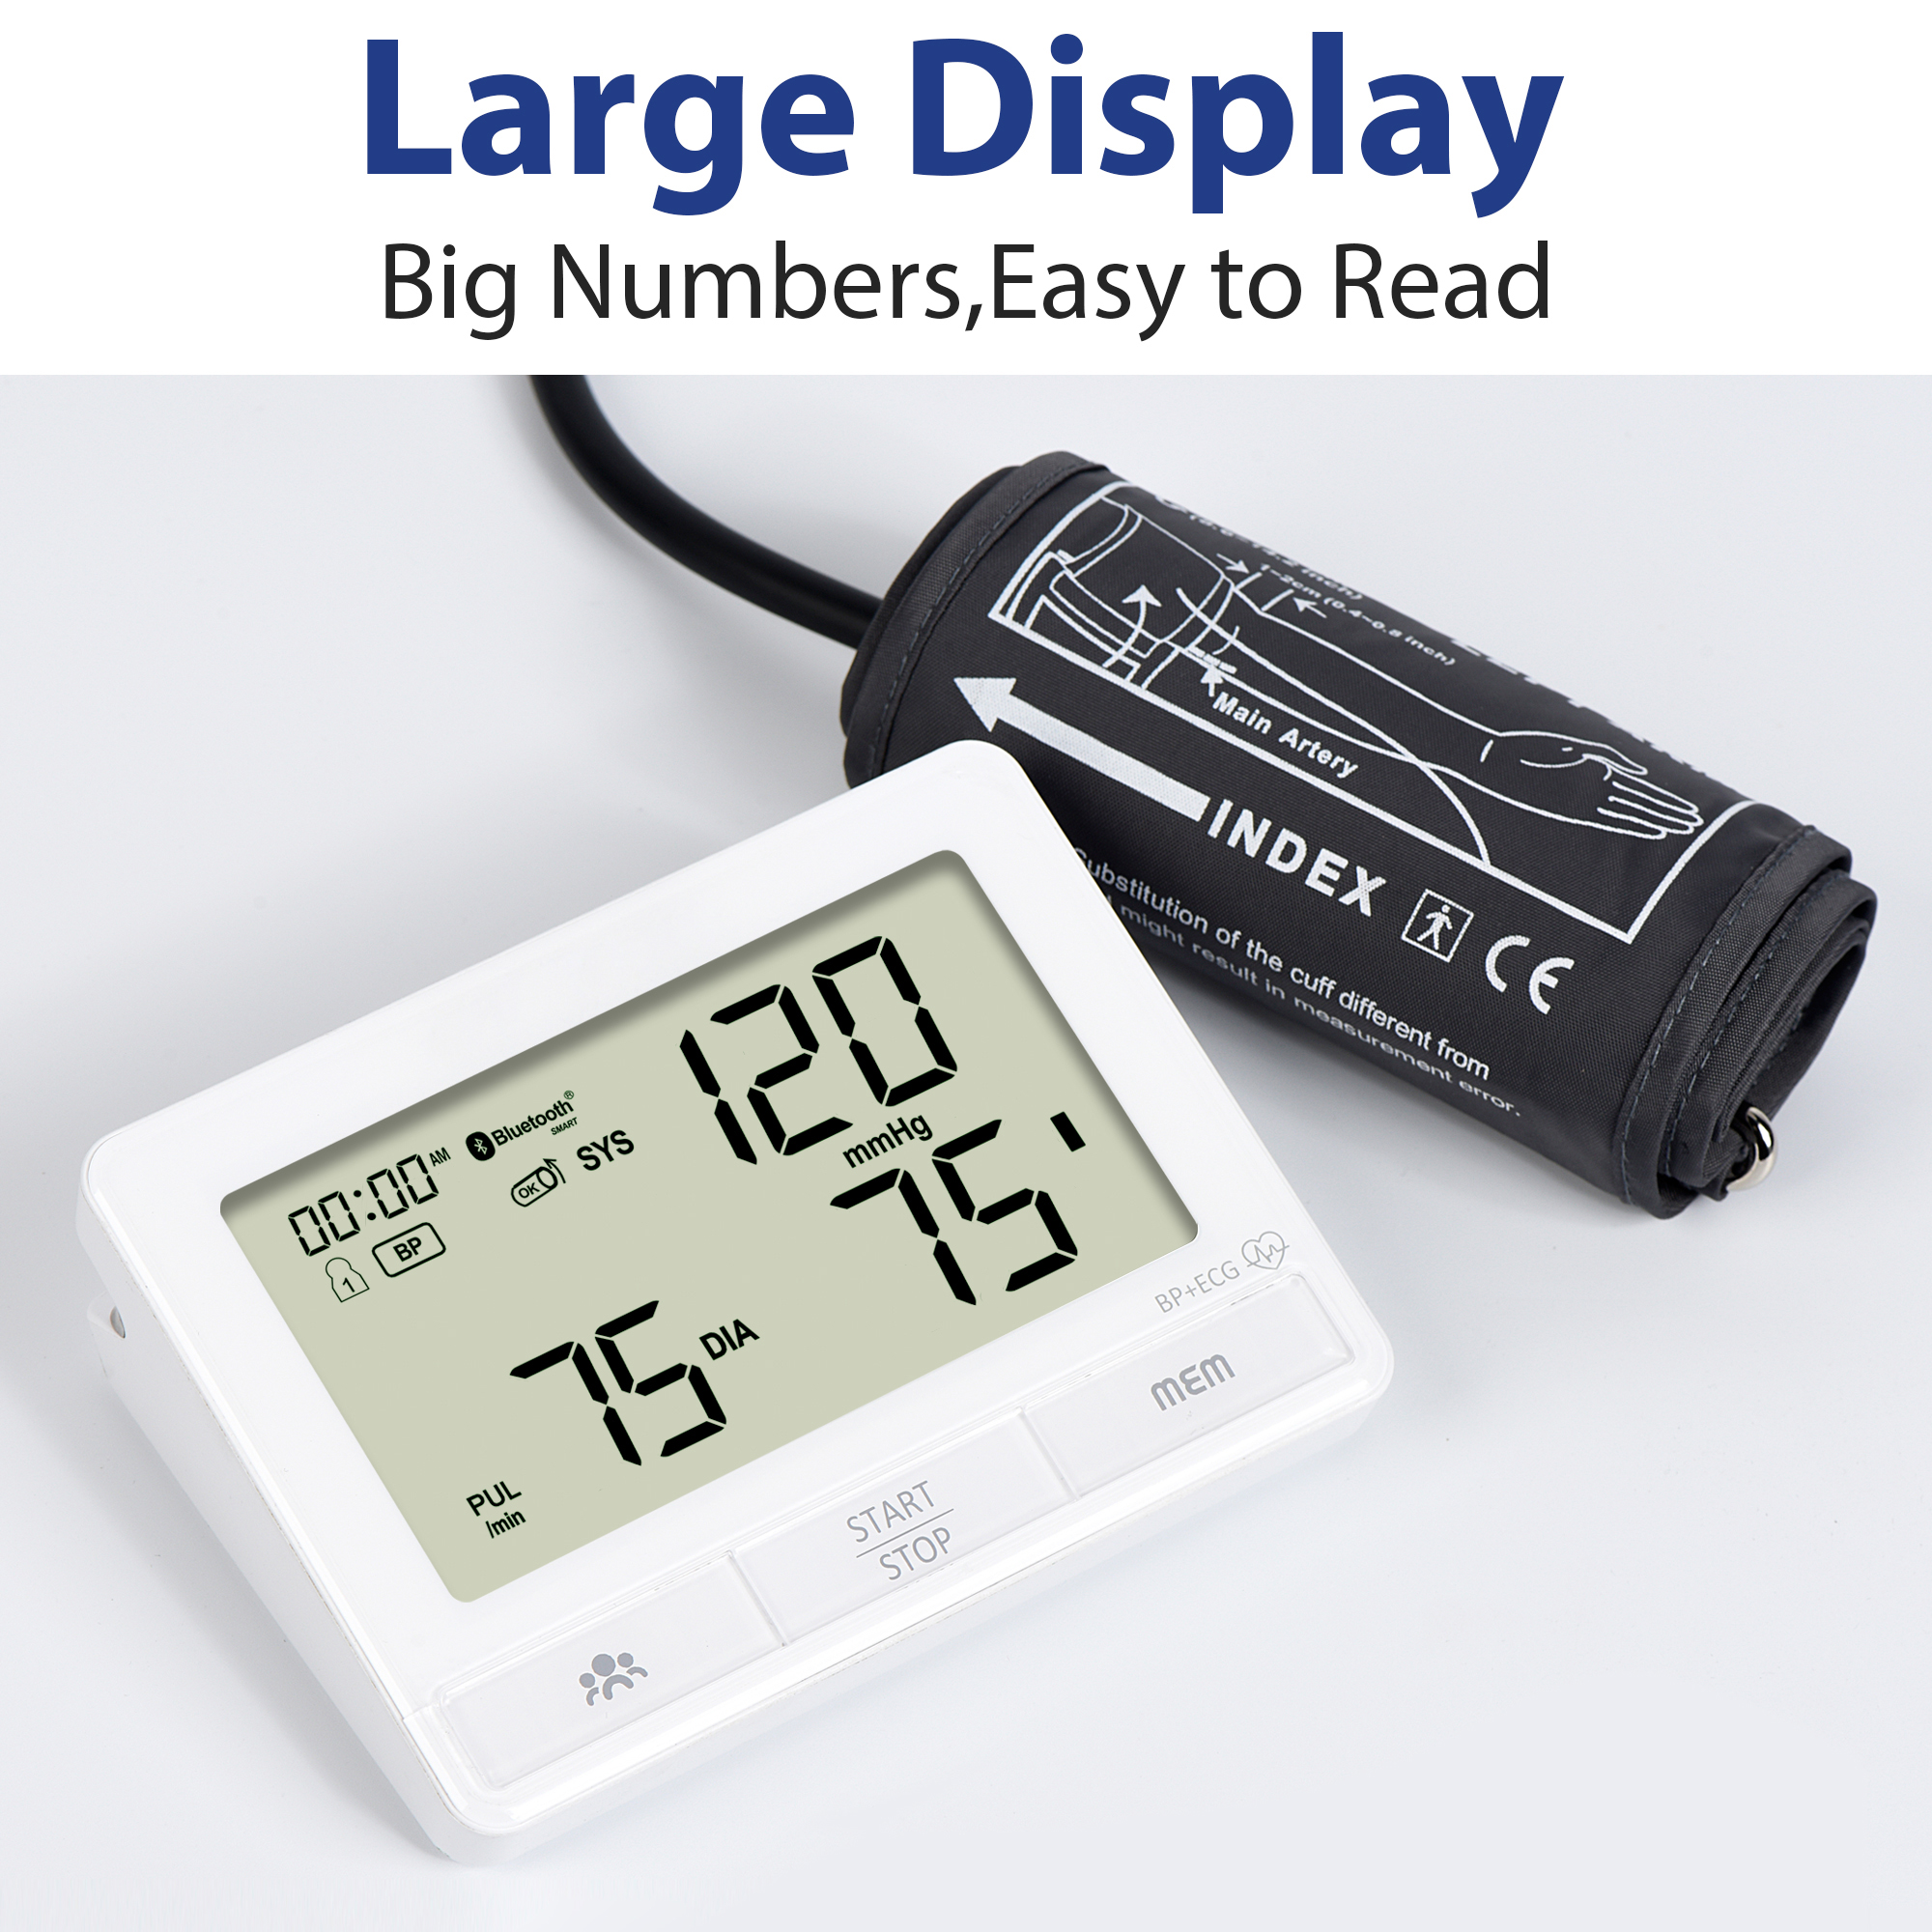 A higanyos vérnyomásmérő jobb, mint a digitális vérnyomásmérők – Igazság vagy balítélet?